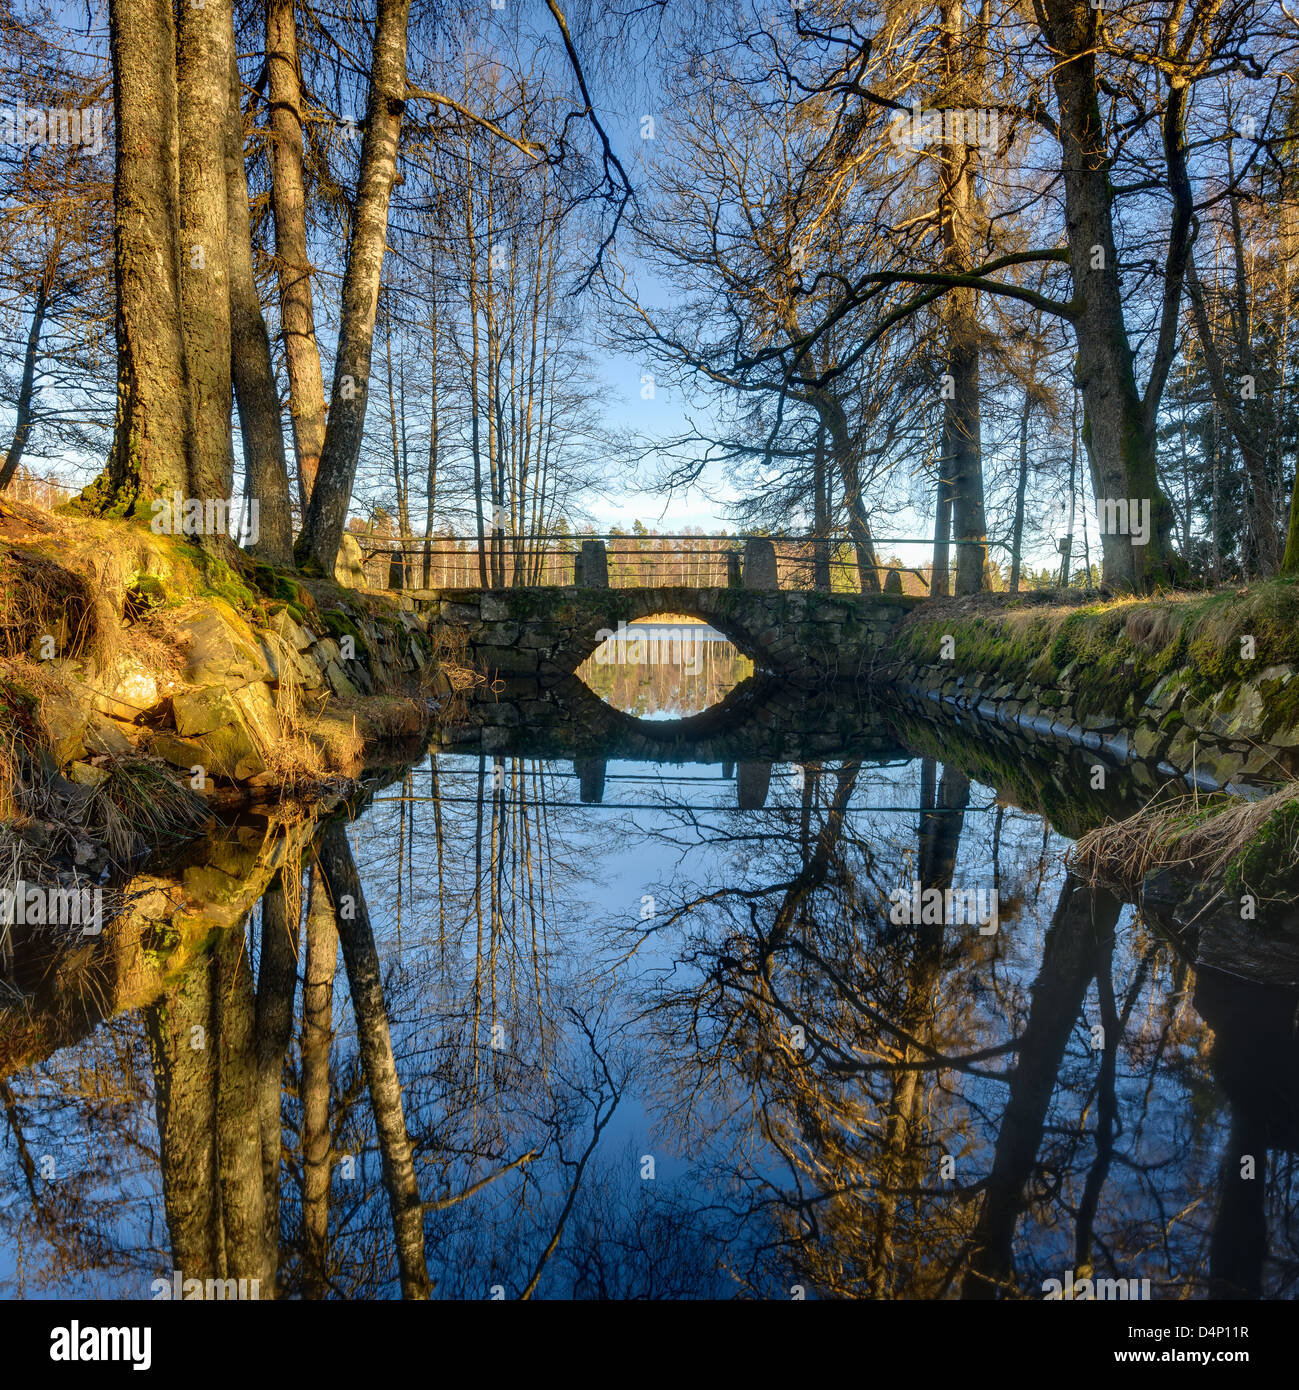 Bridge over calm river, Hunneberg, Sweden, Europe Stock Photo